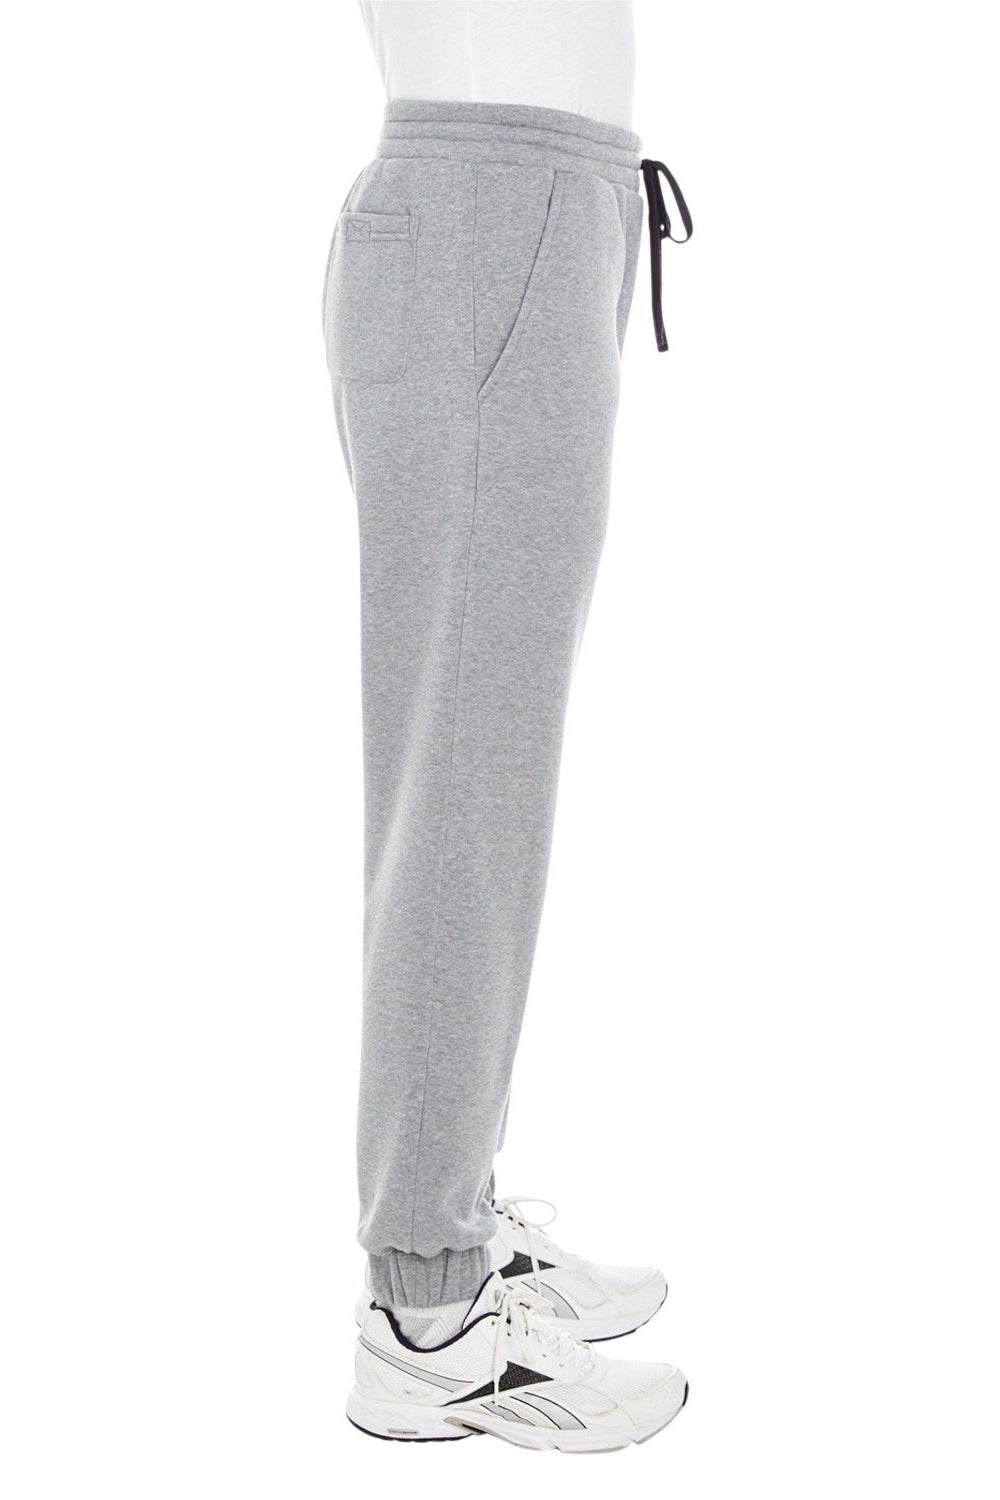 Burnside BU8800 Mens Fleece Jogger Sweatpants w/ Pockets Heather Grey Model Side